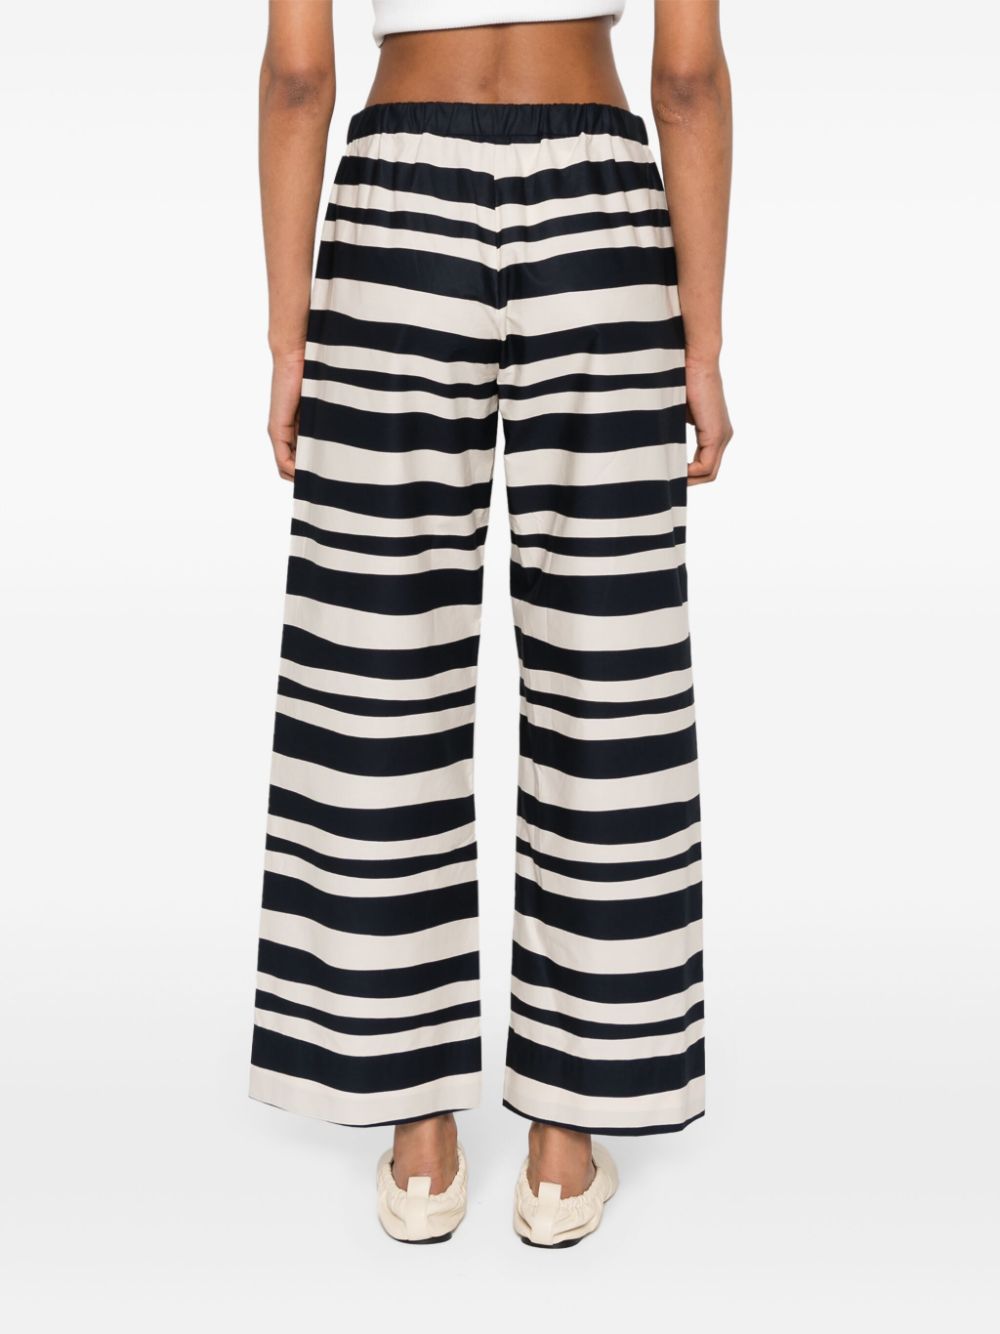 Stripe pattern popeline texture pants